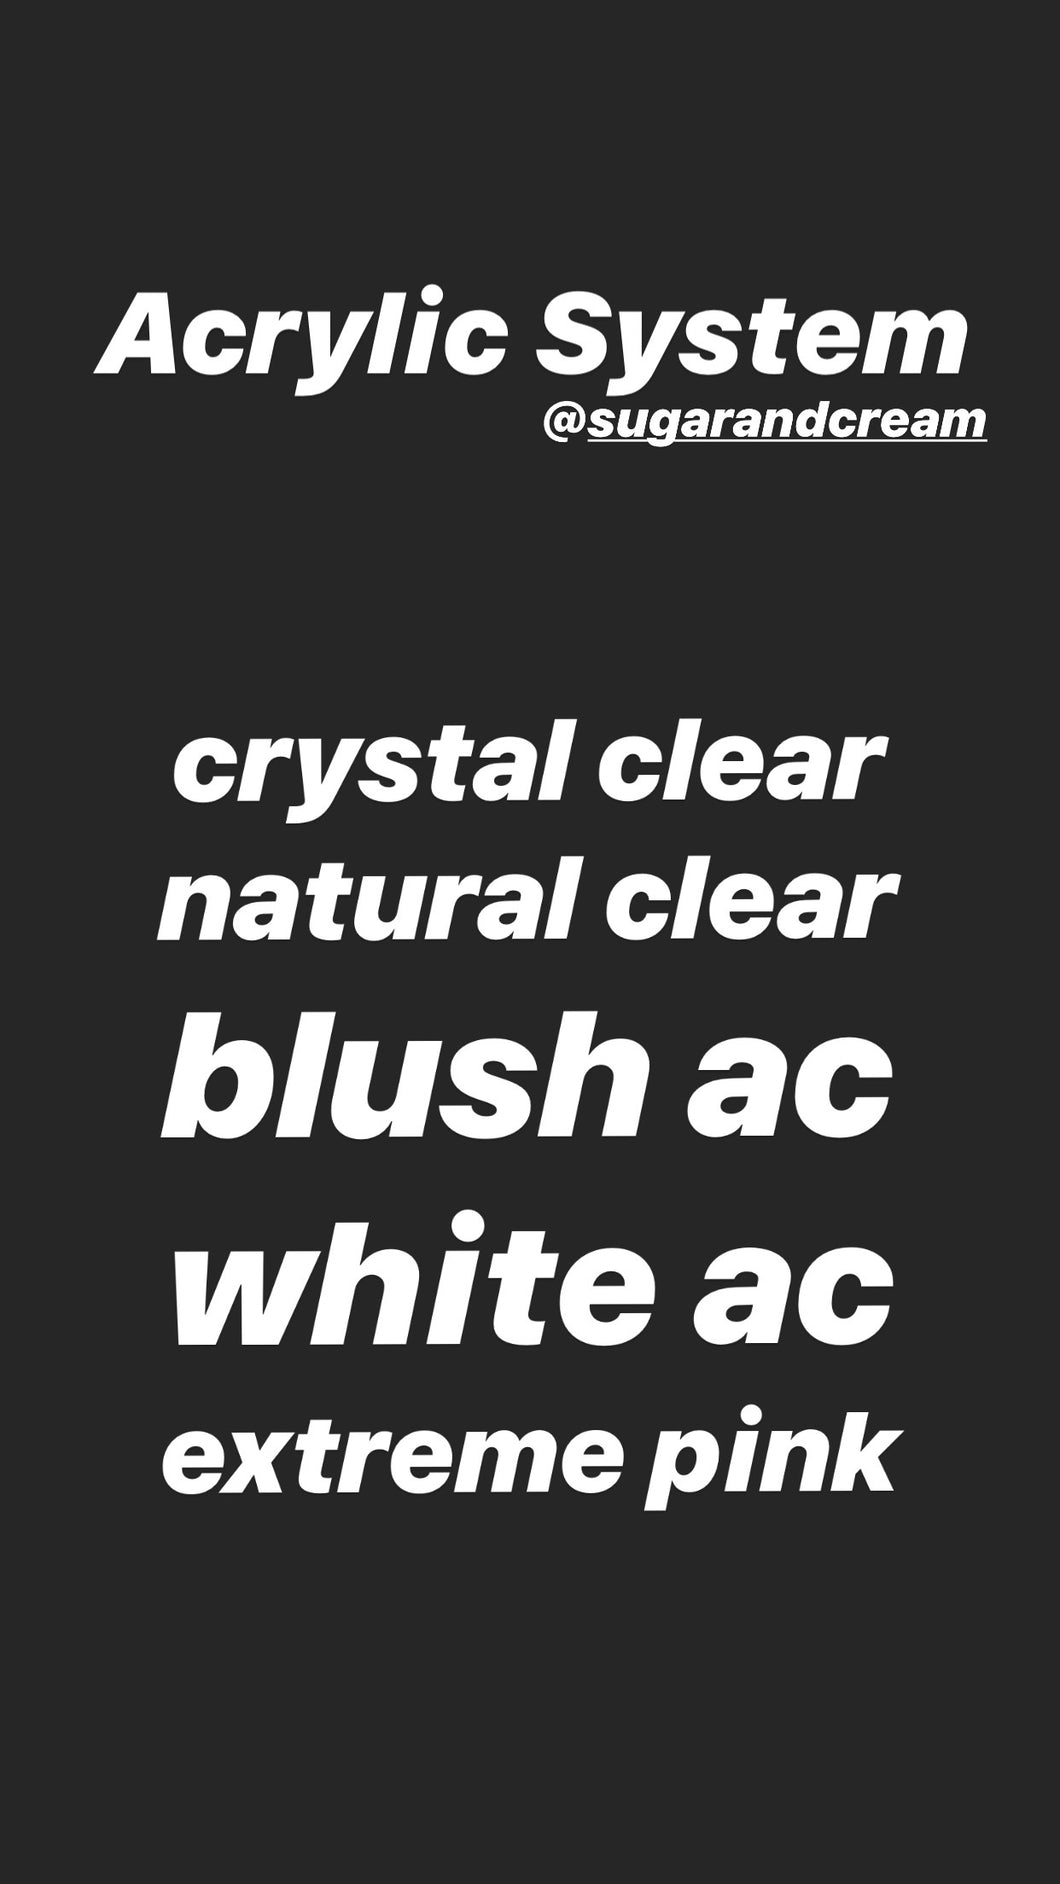 Sugar & Cream Acrylic System